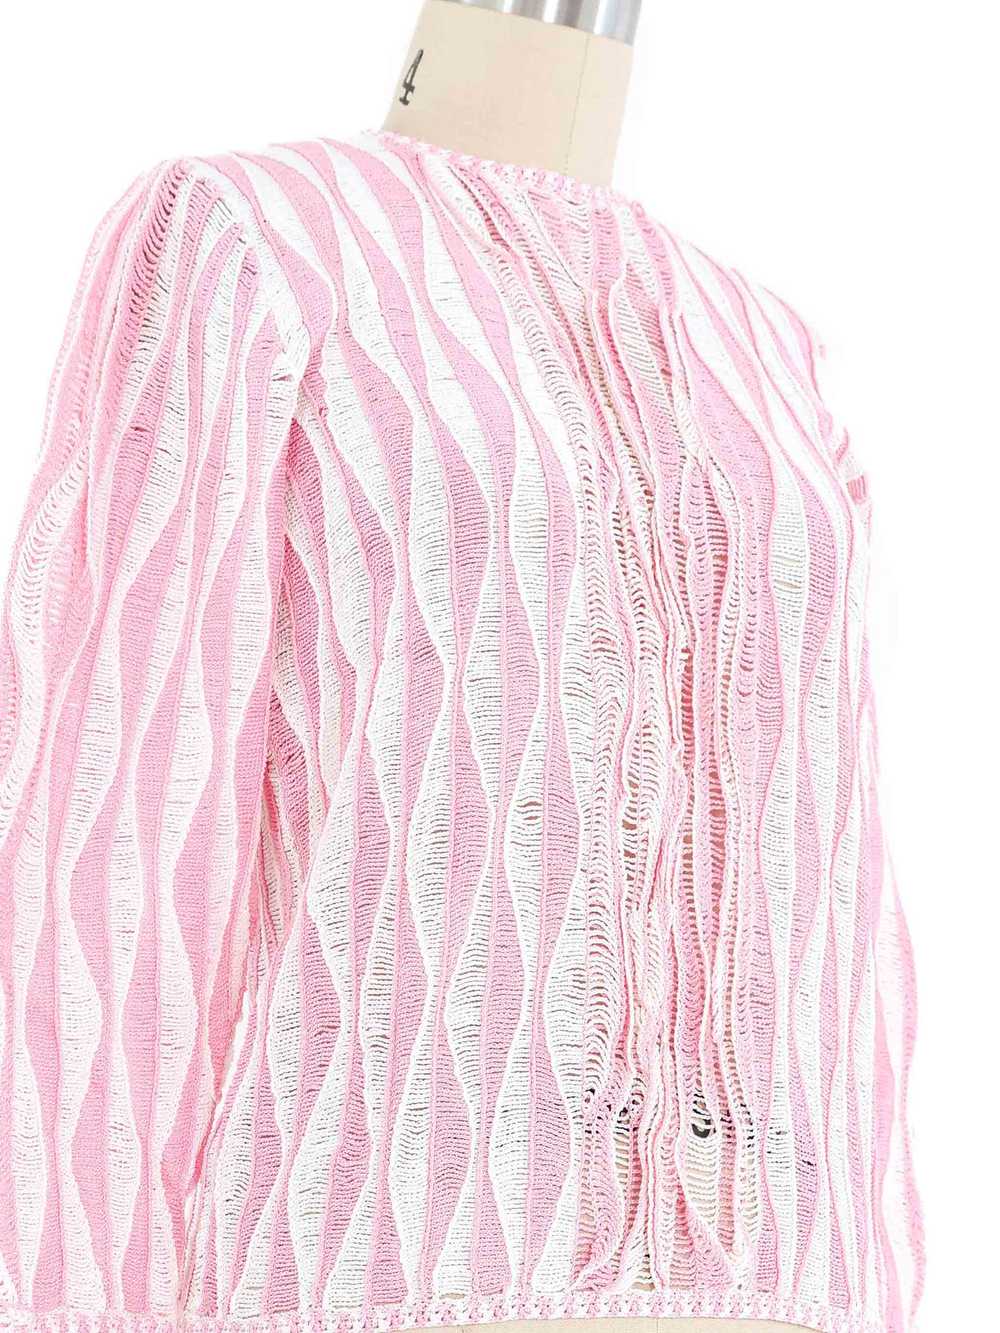 Pink Wave Crochet Top - image 2